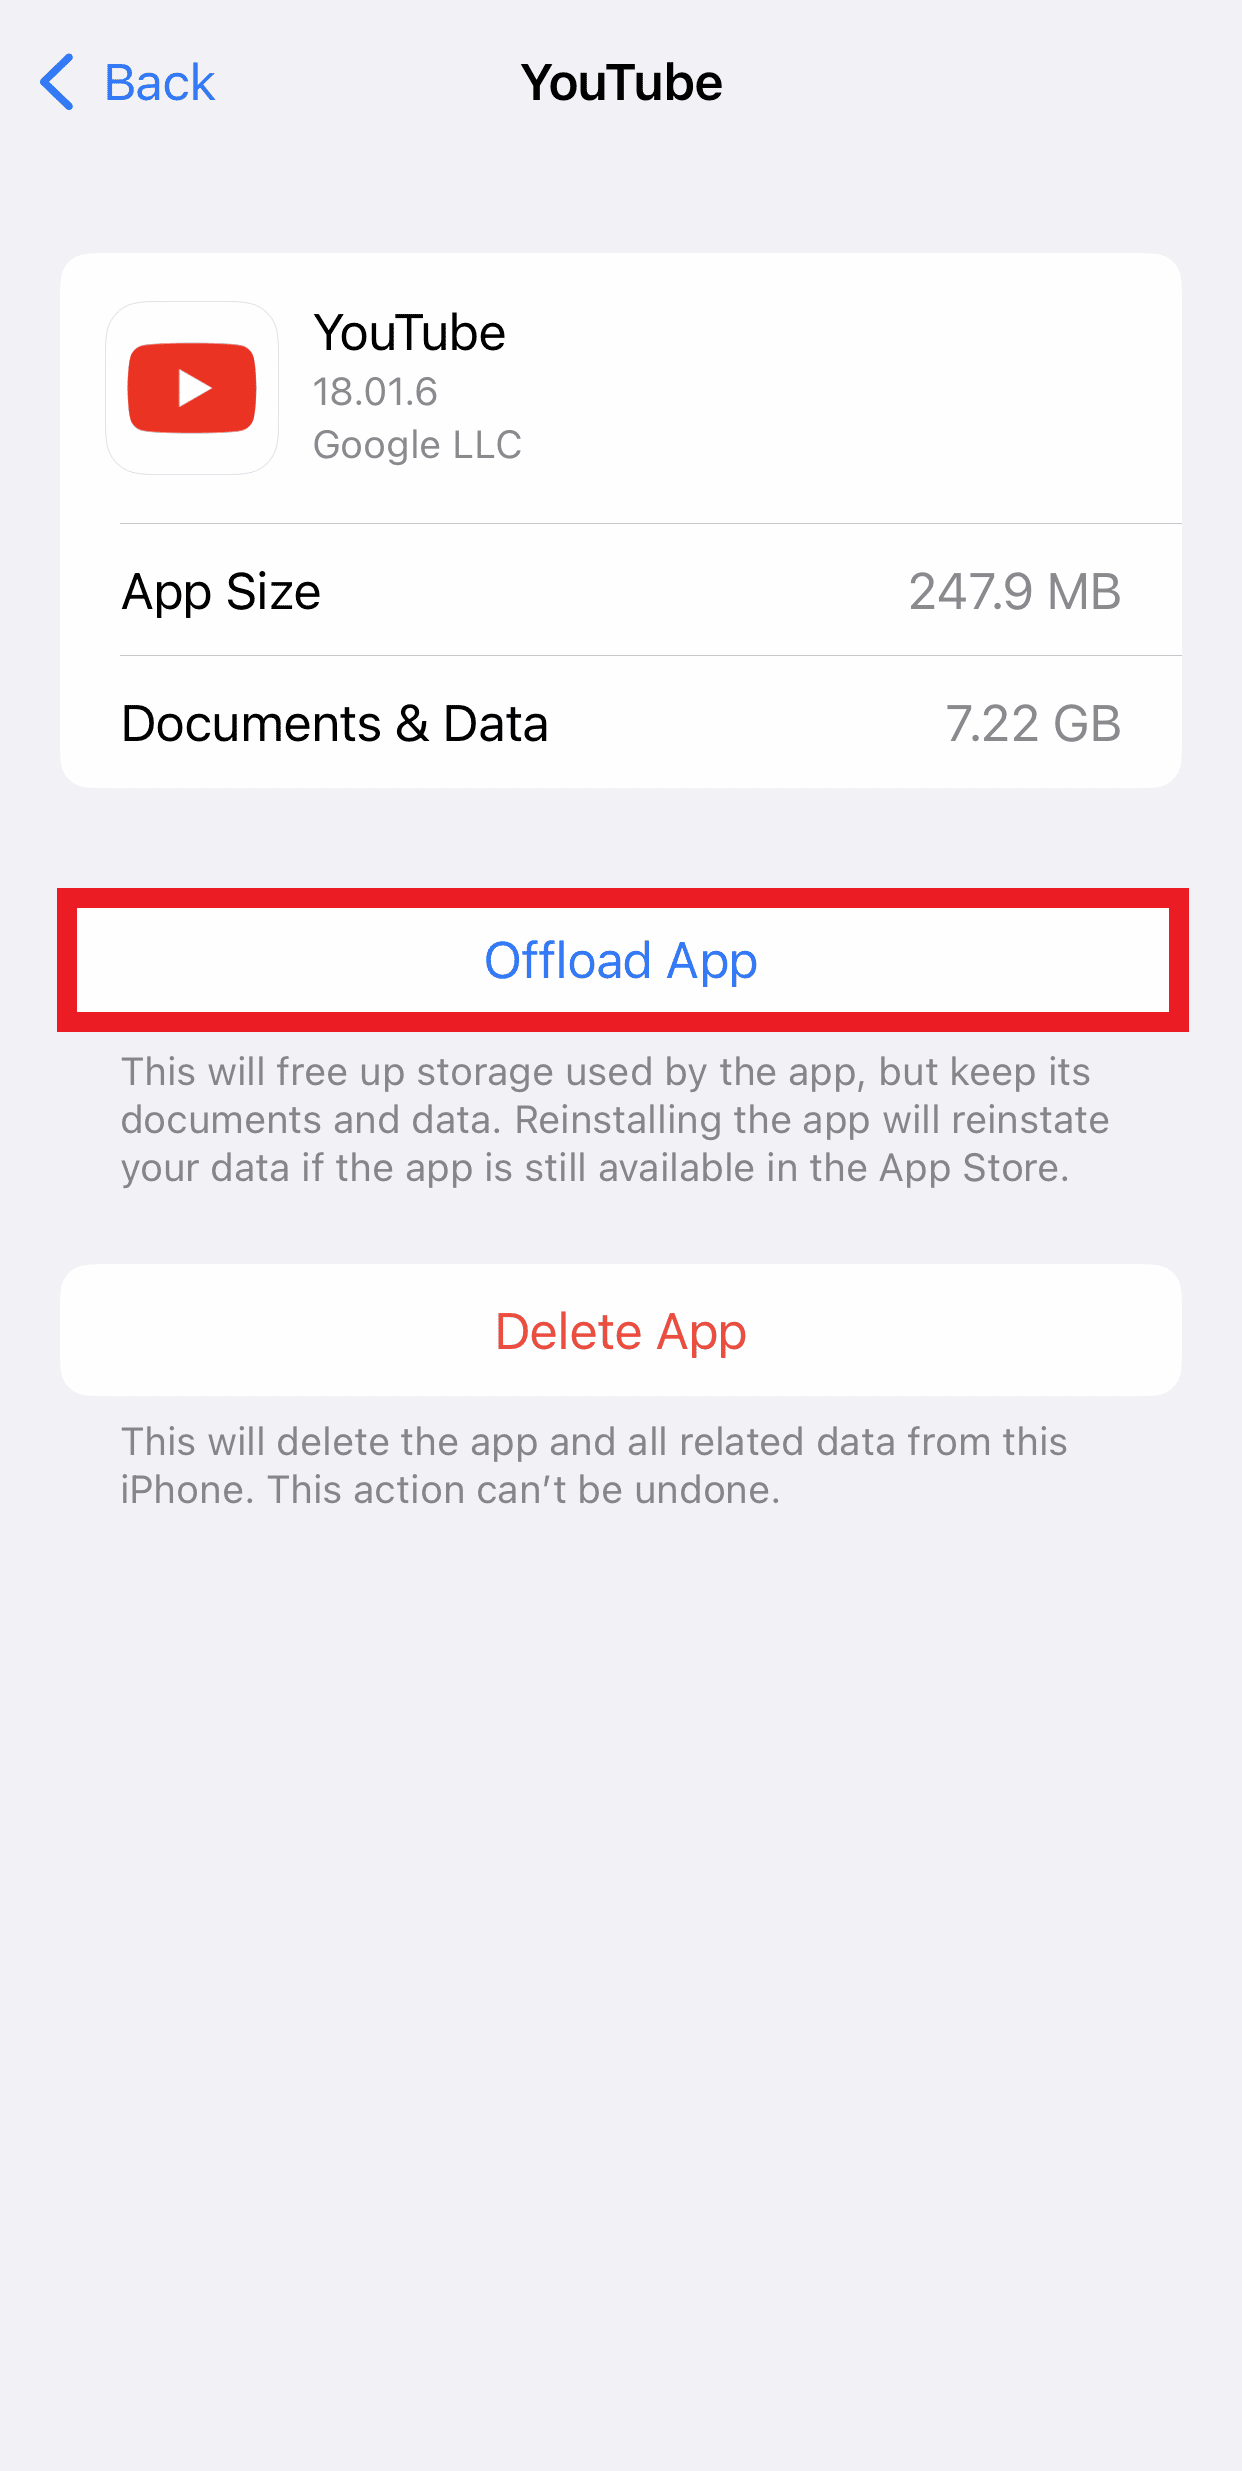 Appuyez sur Offload App pour libérer de l'espace de stockage sur votre iPhone